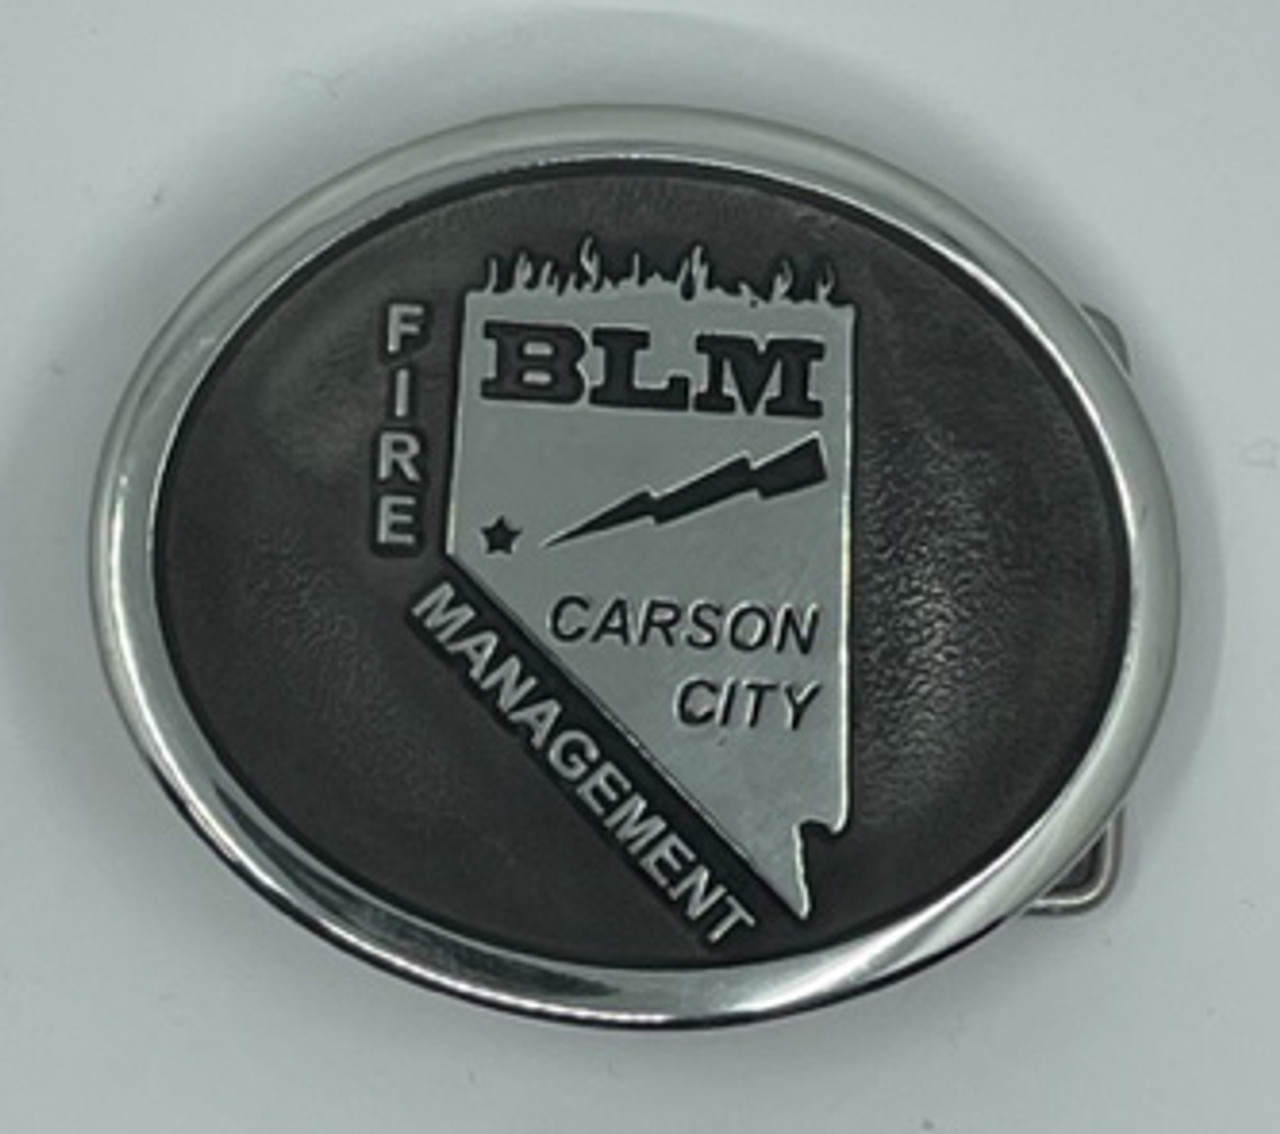 Carson City BLM Fire Management Buckle